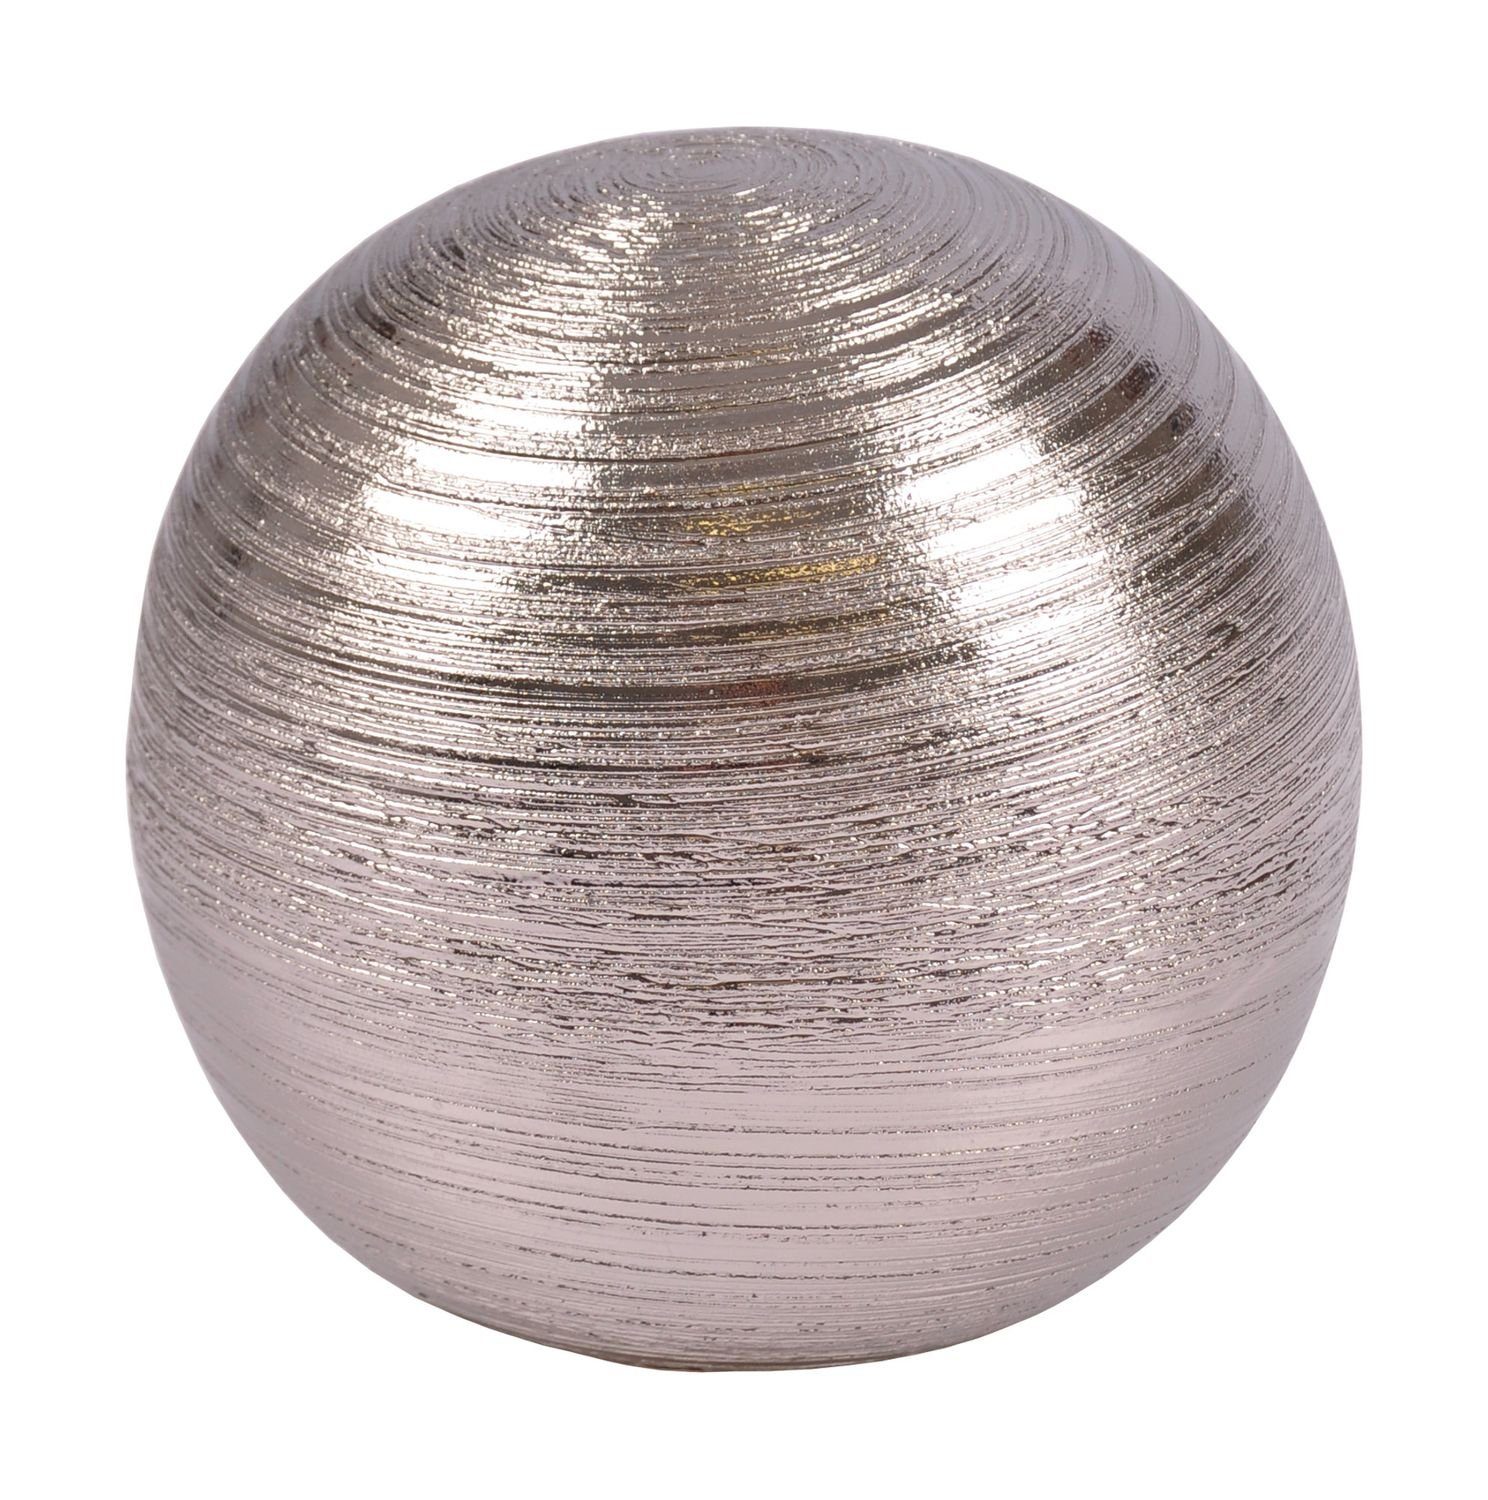 aus Ku Keramik New Dekofigur Dekofigur Home Silberkugel silber Tischdeko Dekokugel 15,5cm